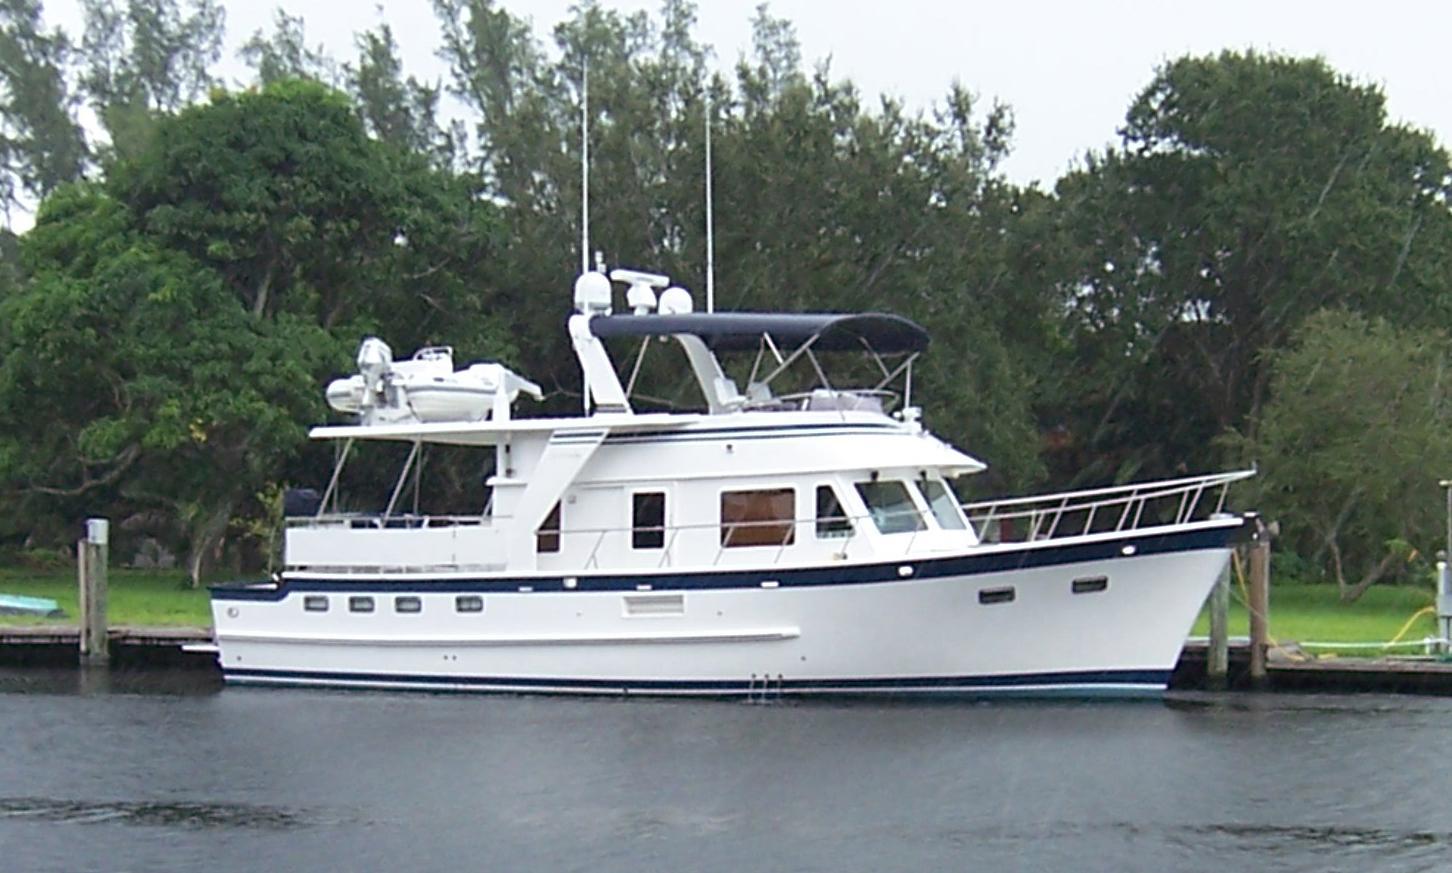 Defever Cockpit Motoryacht/Trawler, Fort Lauderdale